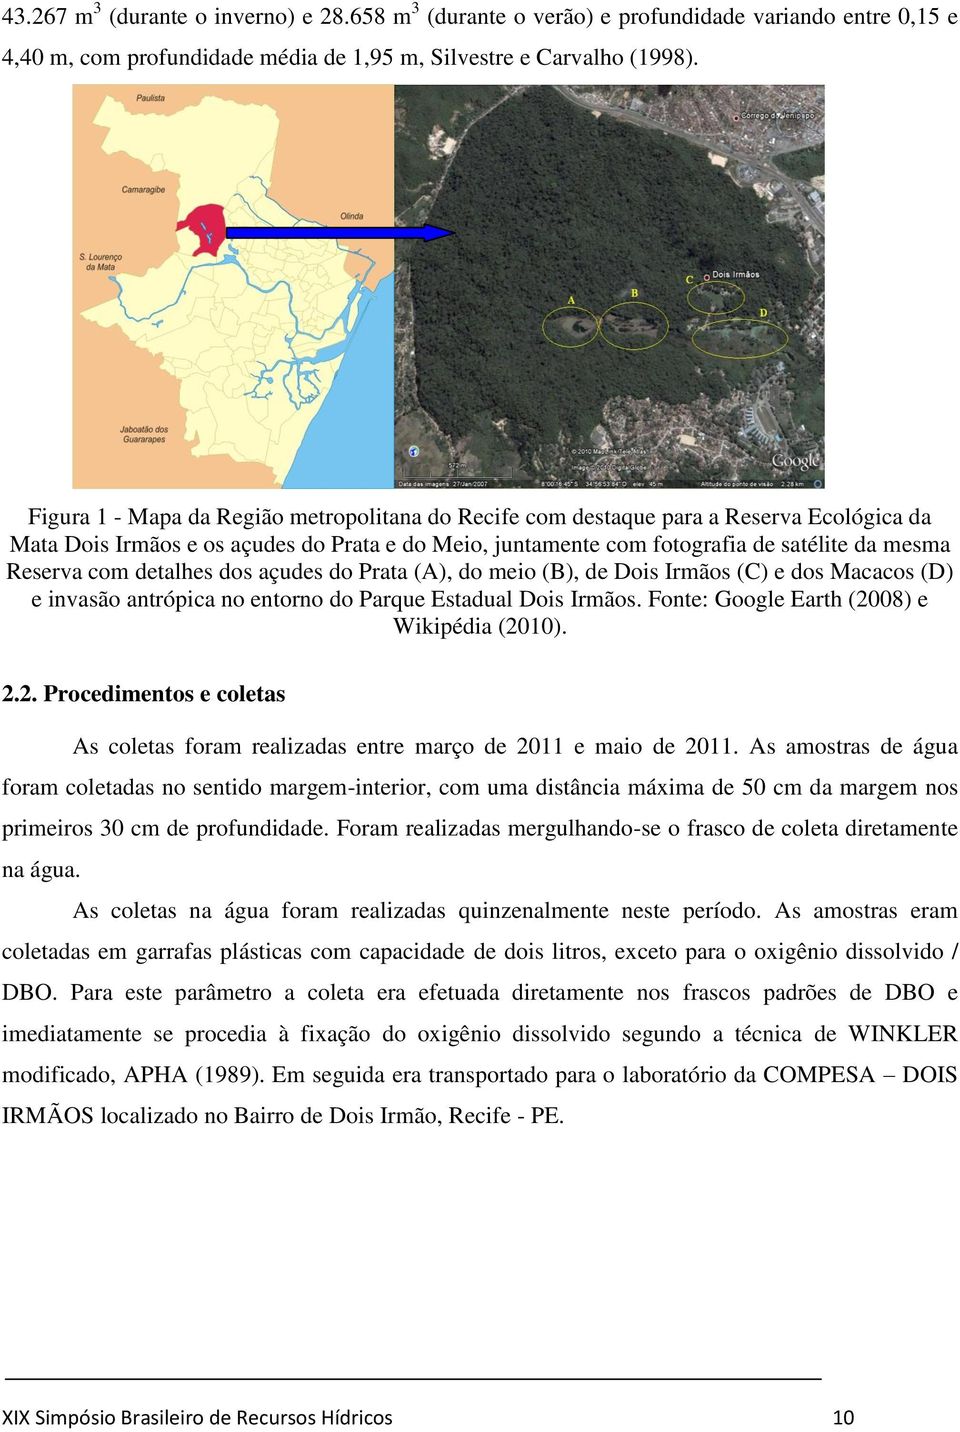 detalhes dos açudes do Prata (A), do meio (B), de Dois Irmãos (C) e dos Macacos (D) e invasão antrópica no entorno do Parque Estadual Dois Irmãos. Fonte: Google Earth (20